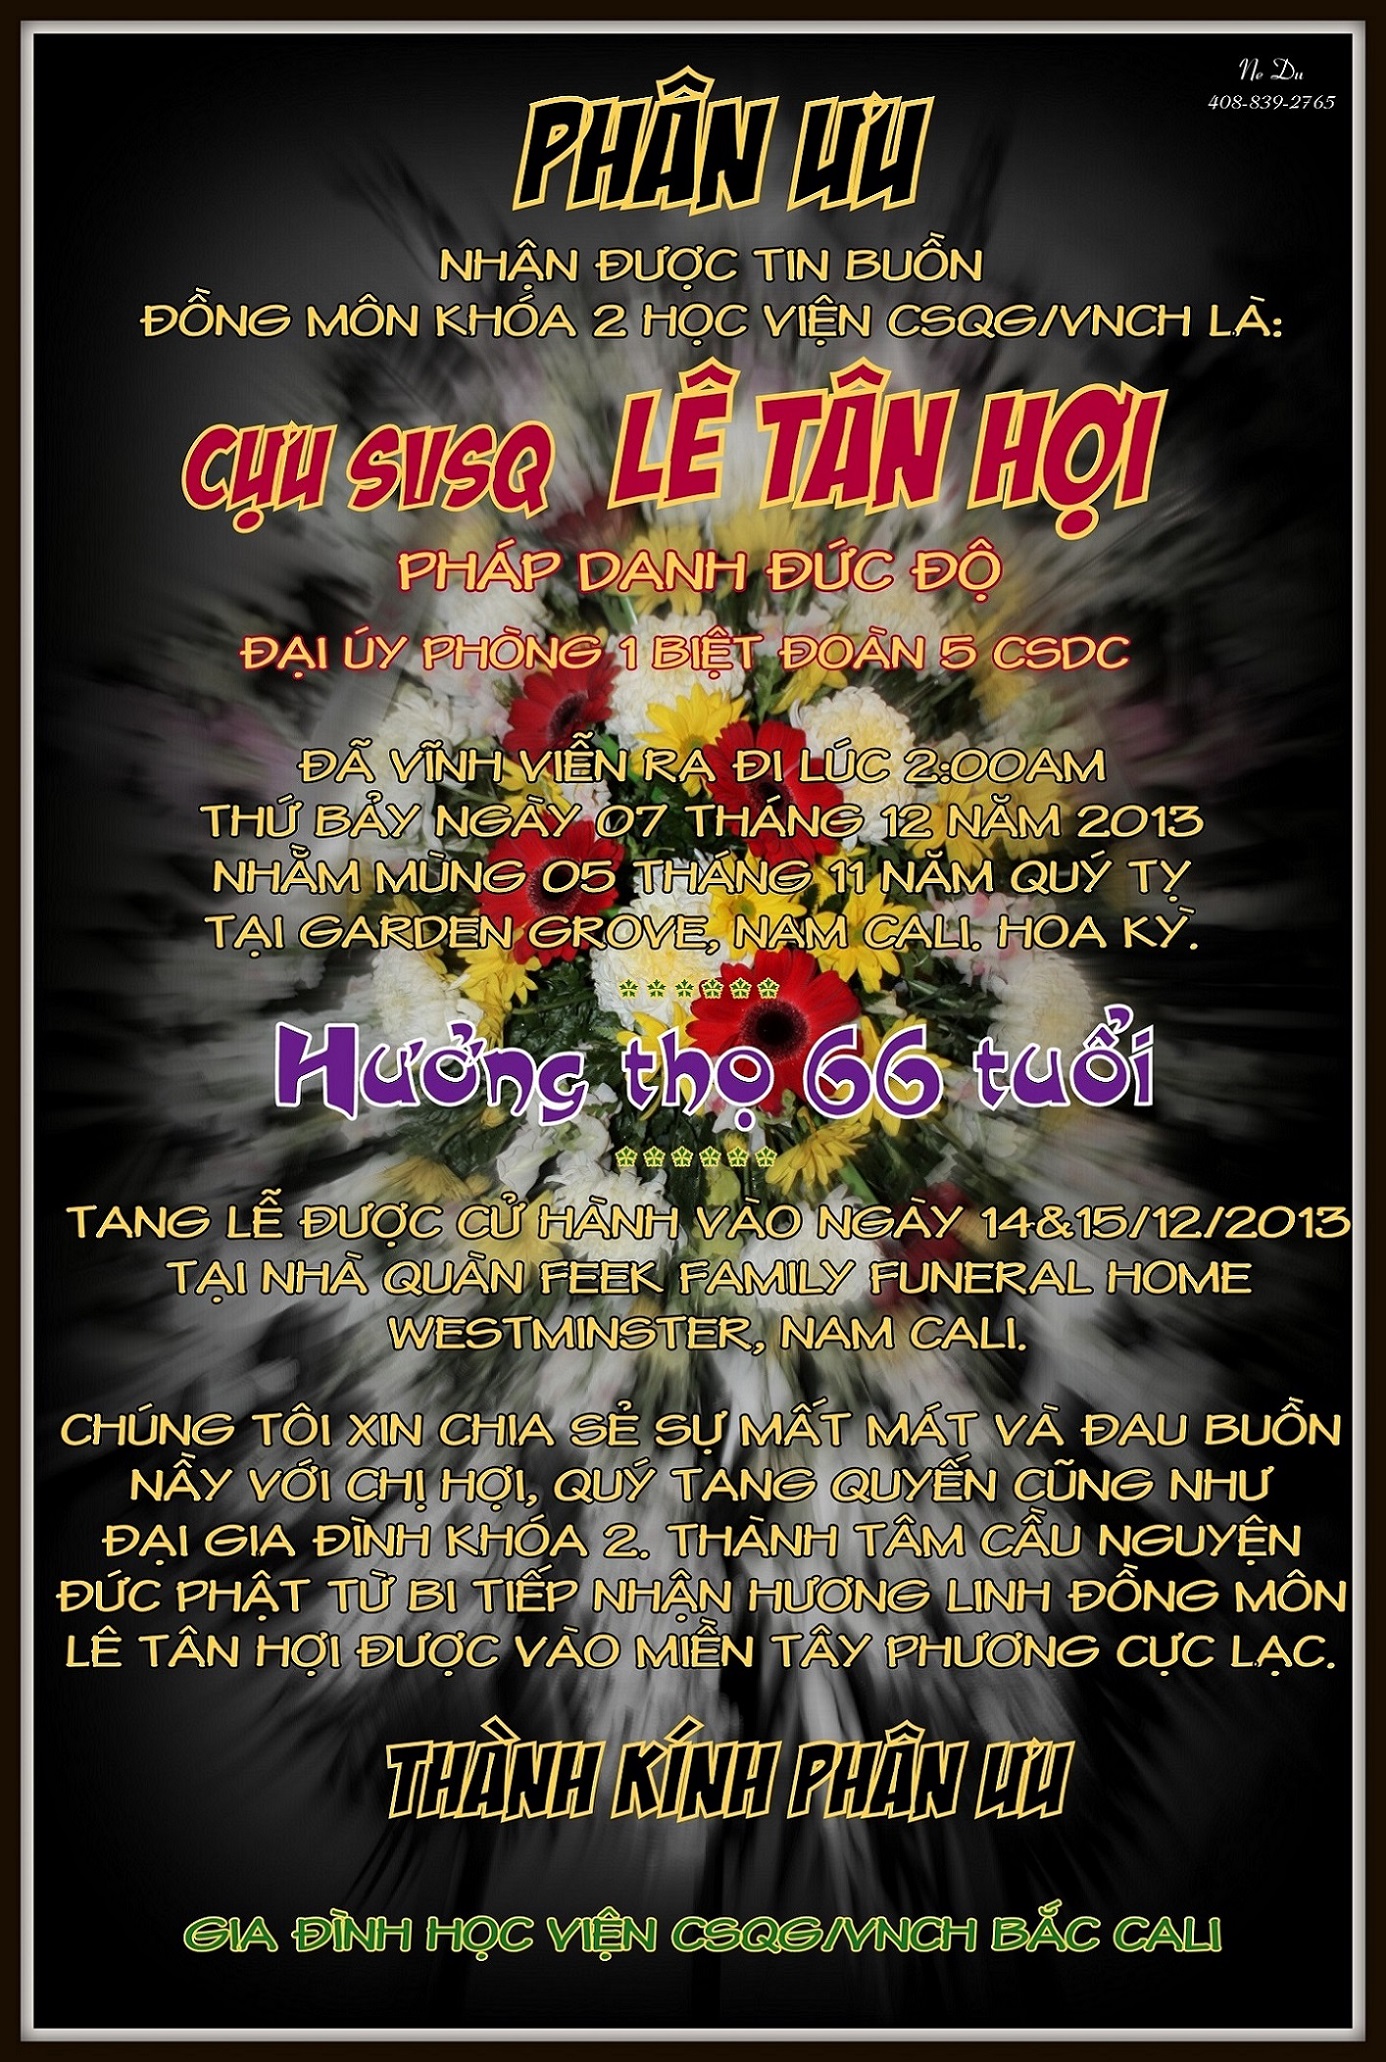 Le Tan_Hoi_HVBC